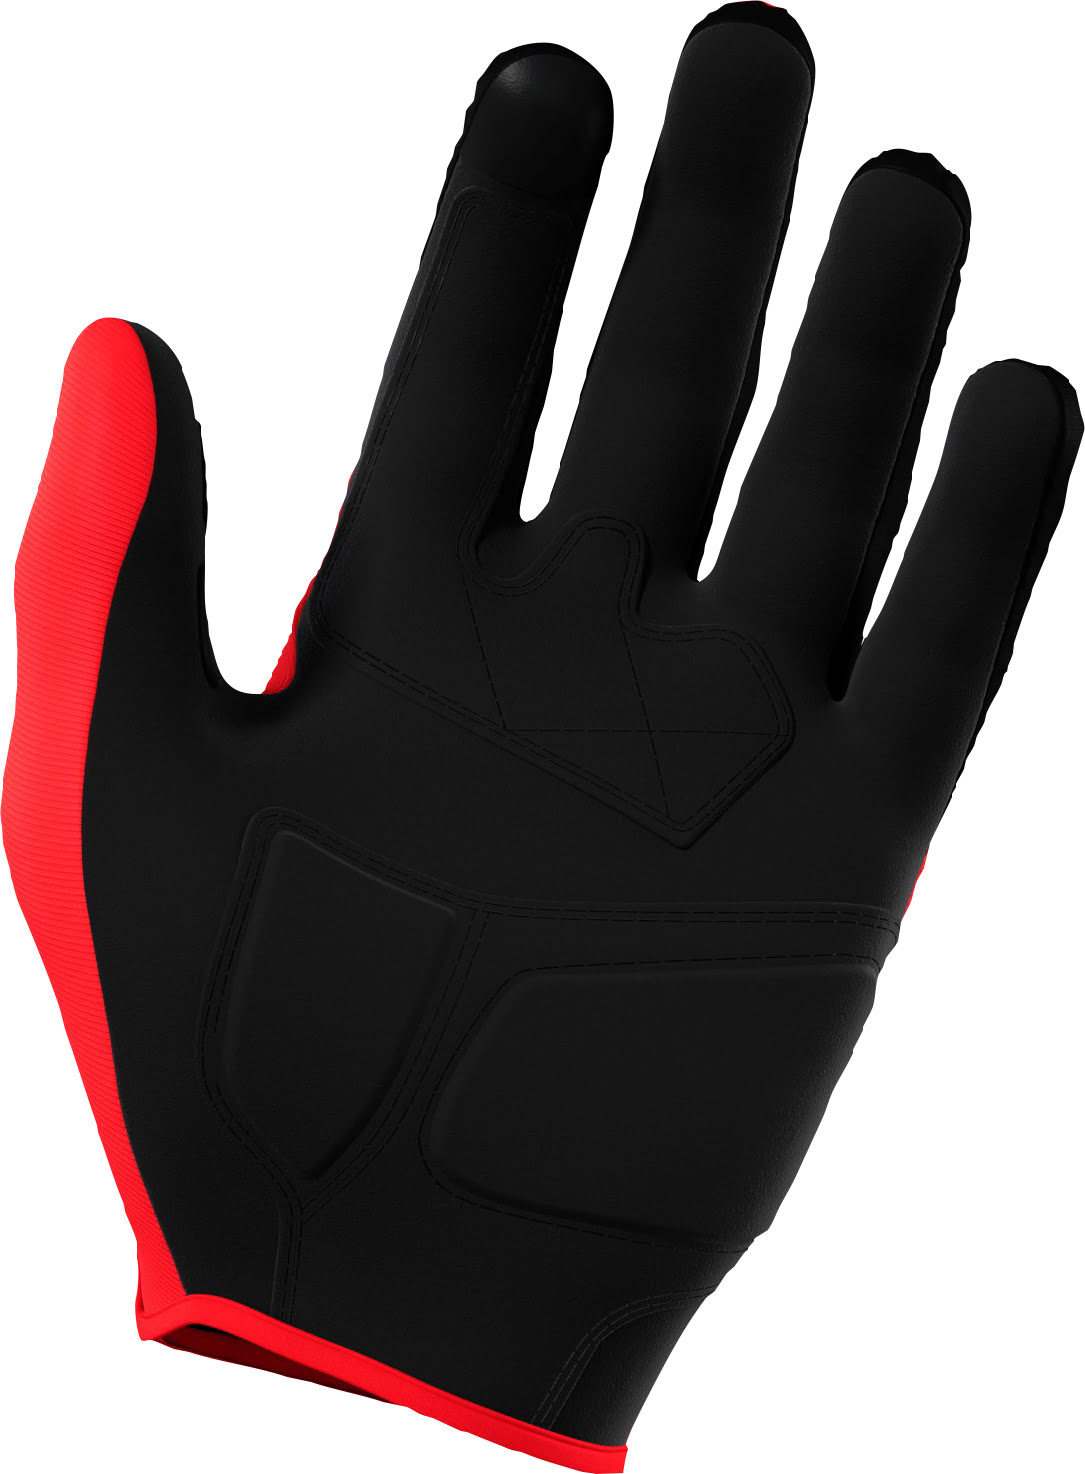 Gloves VISION Red SHOT 